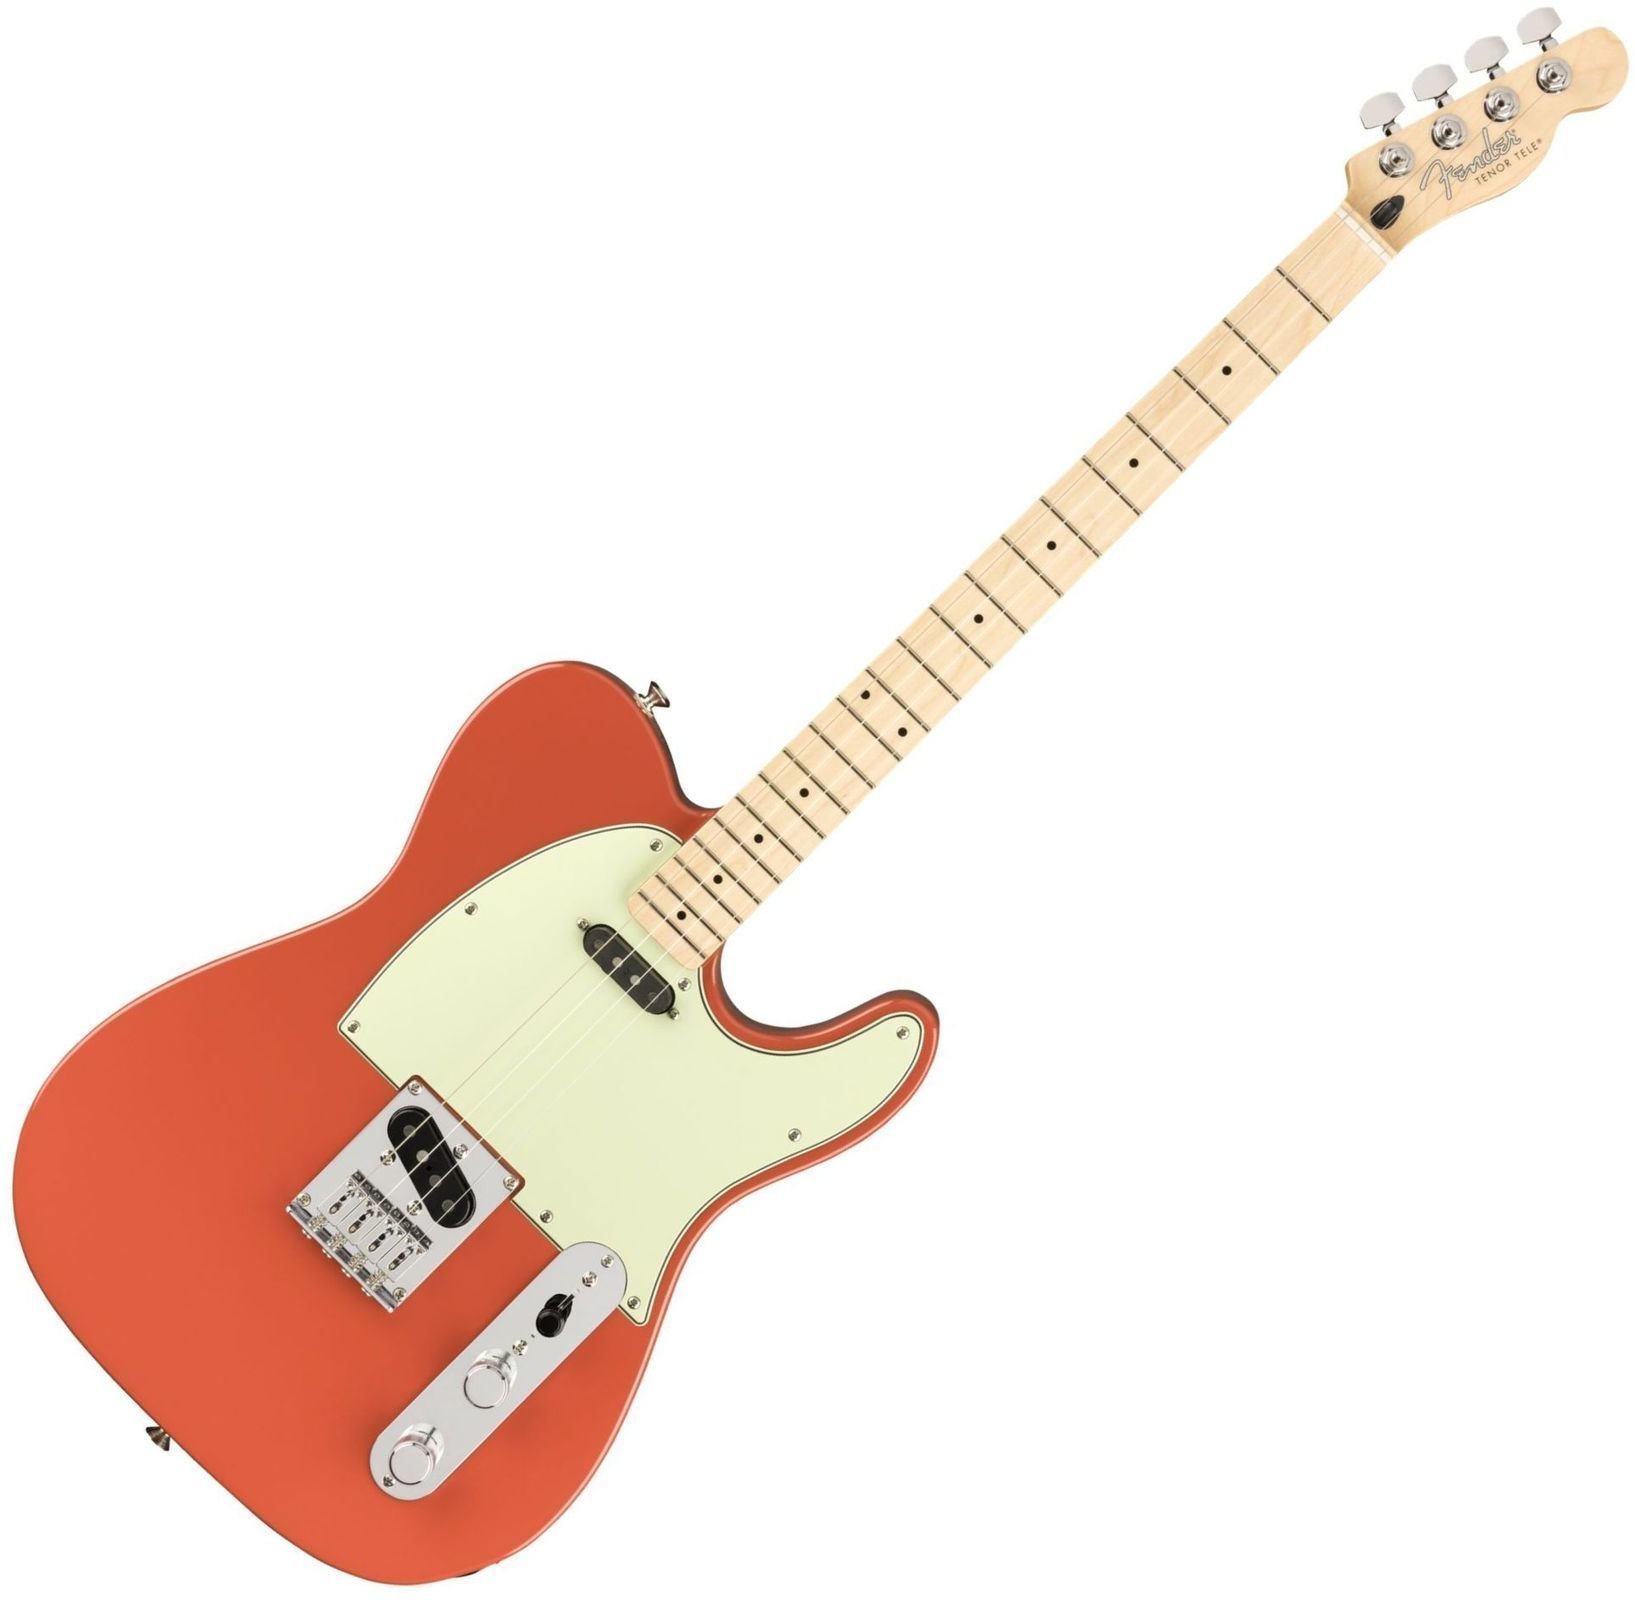 Tenor-ukuleler Fender Tele MN Tenor-ukuleler Fiesta Red